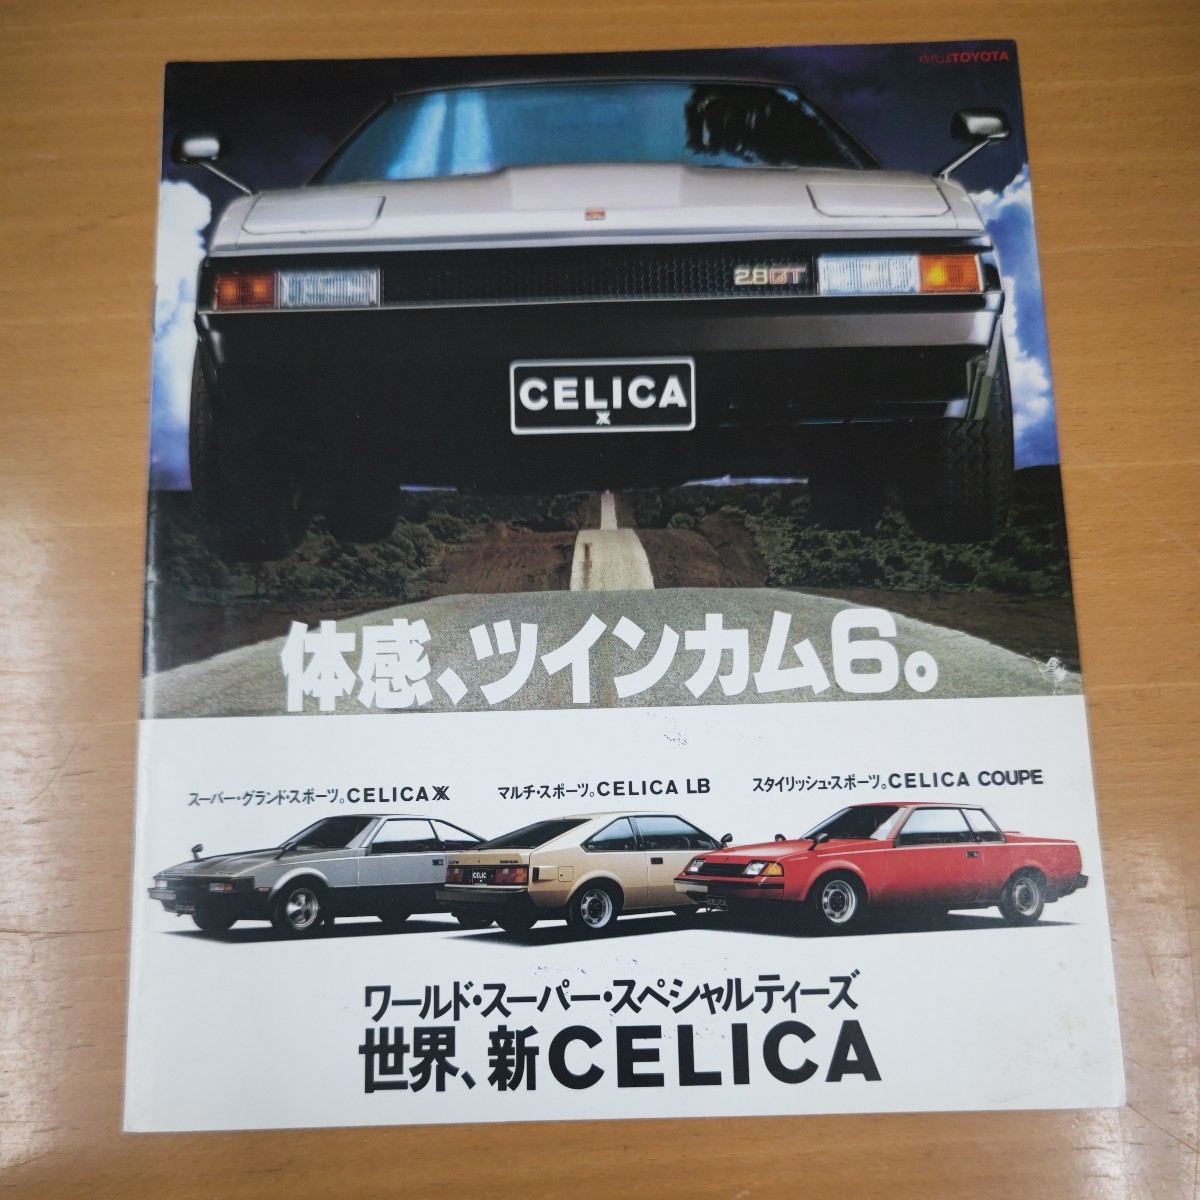 【昭和レトロ】セリカ ダブルエックス LB クーペ 旧車1981年 当時物 トヨタ ツインカム6_画像1